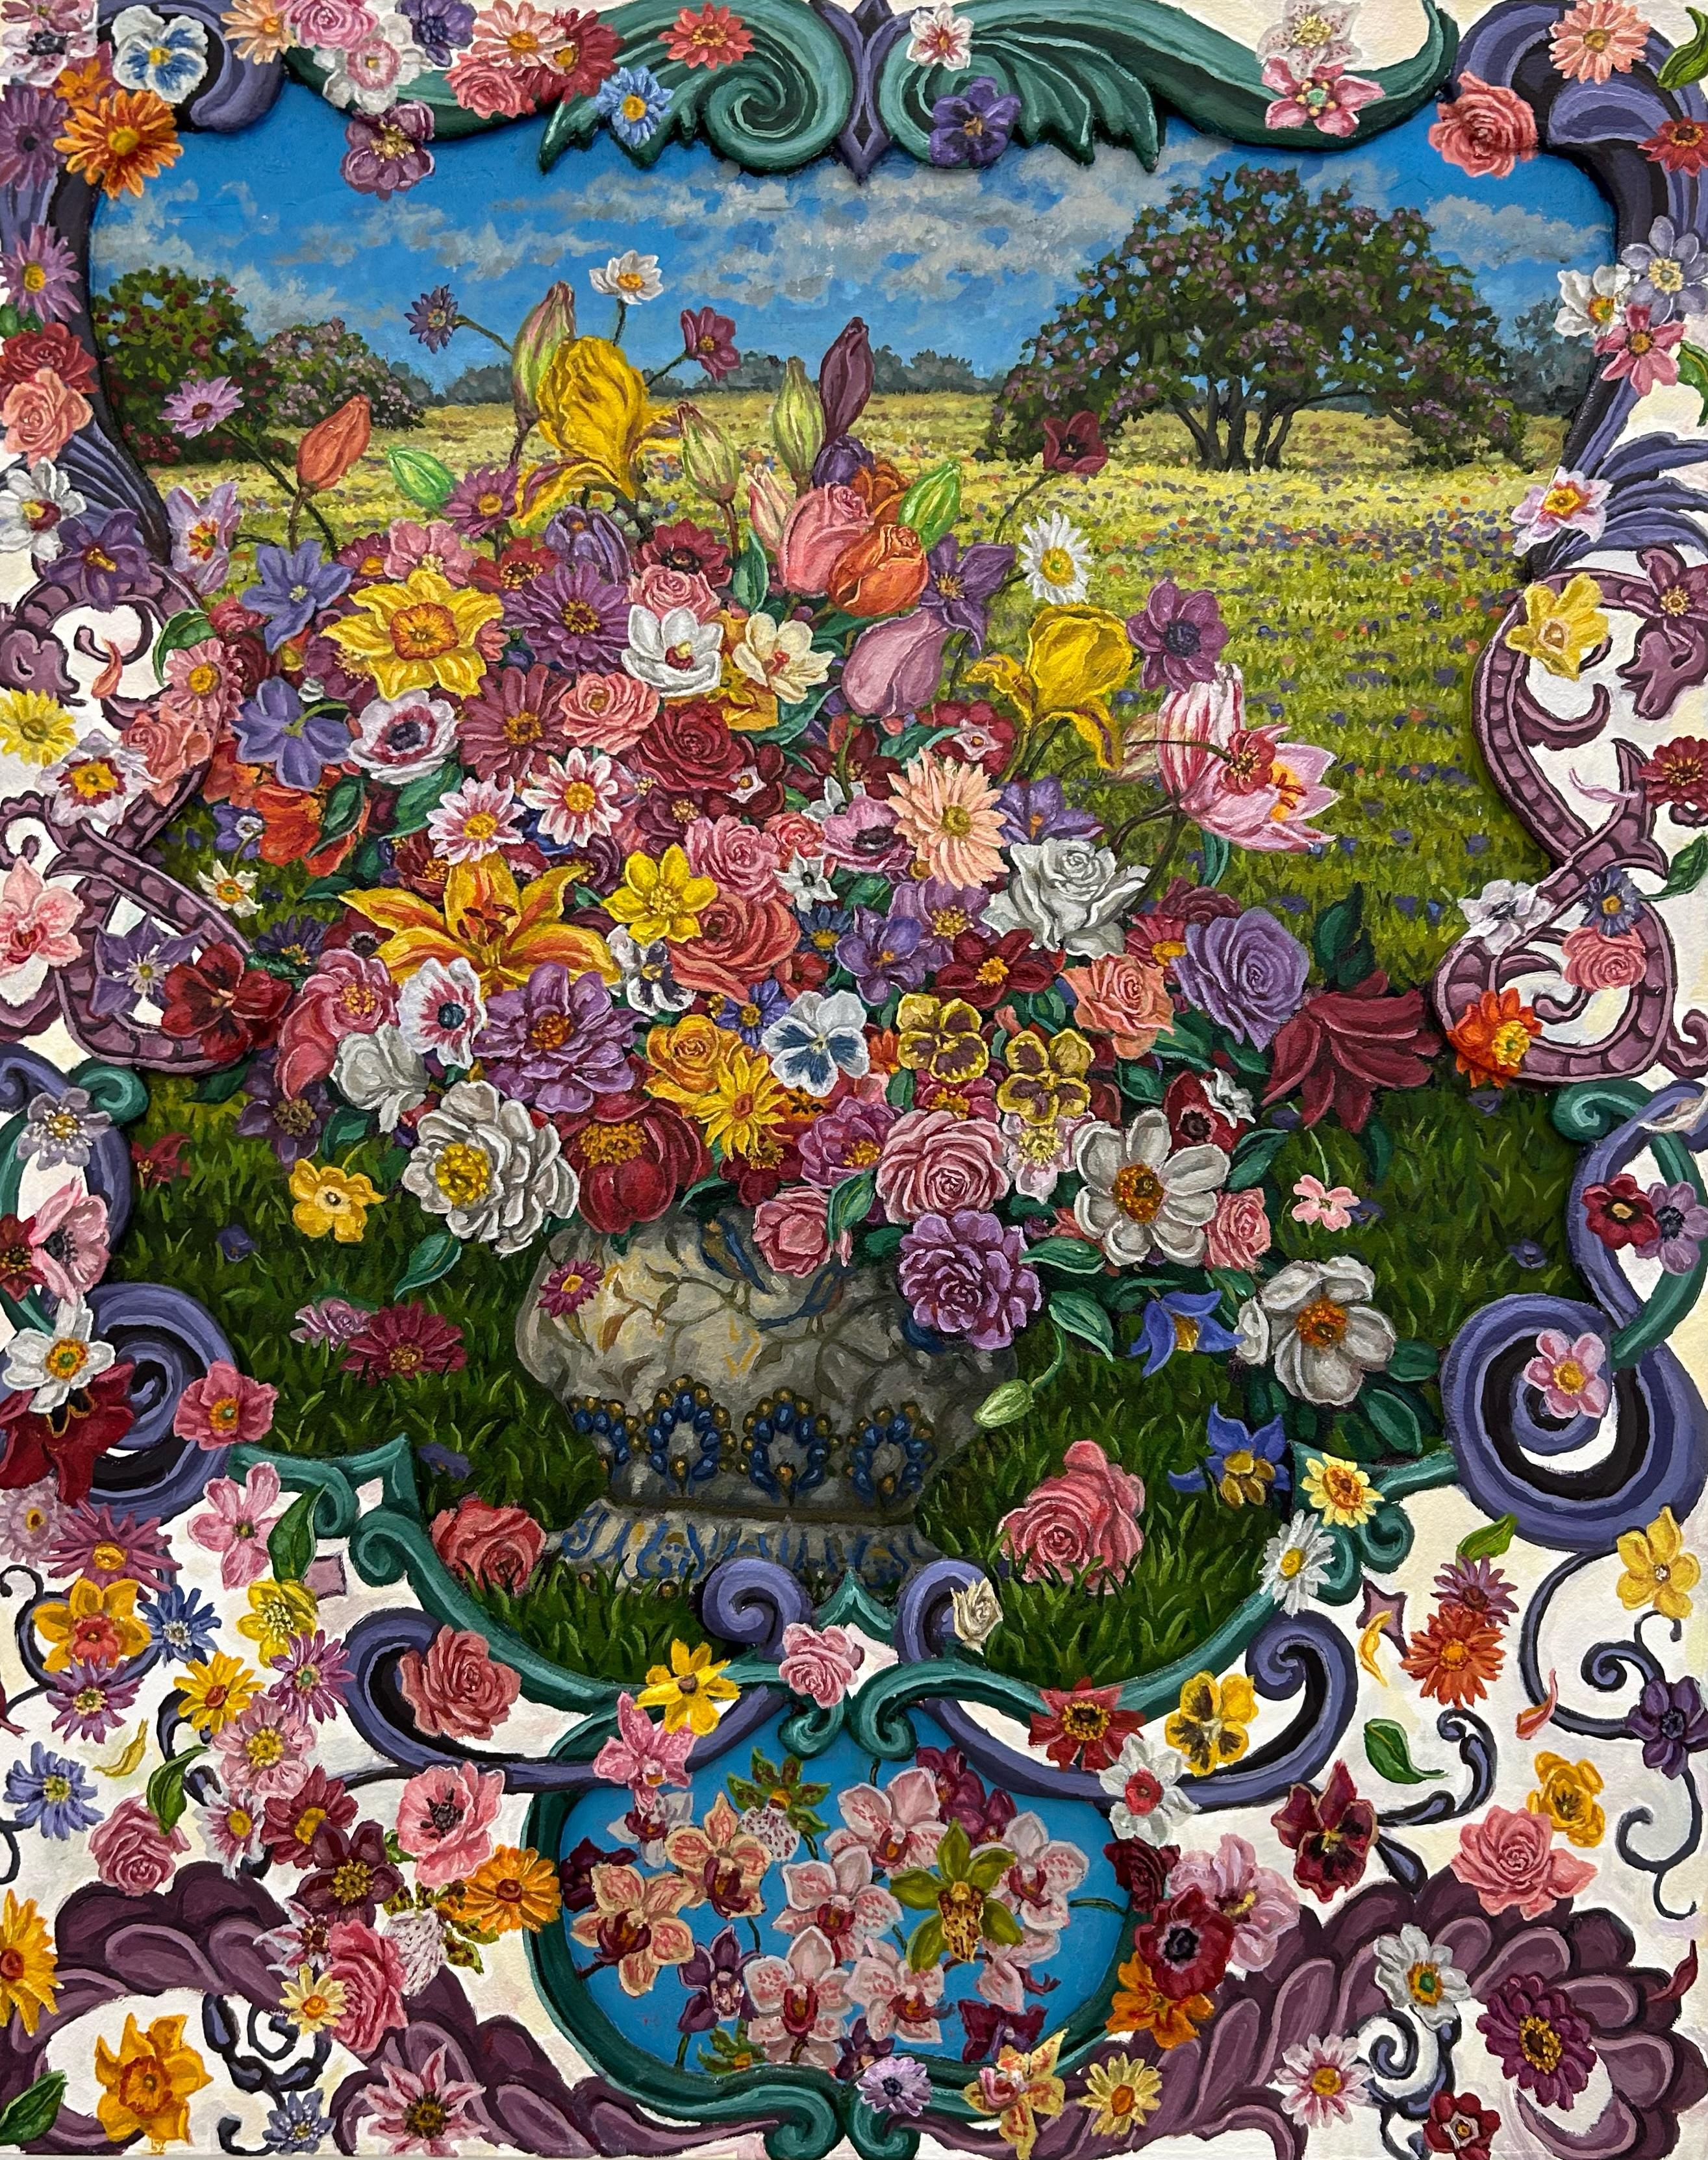 Matt Jacobs Landscape Painting - Bouquet in a Landscape